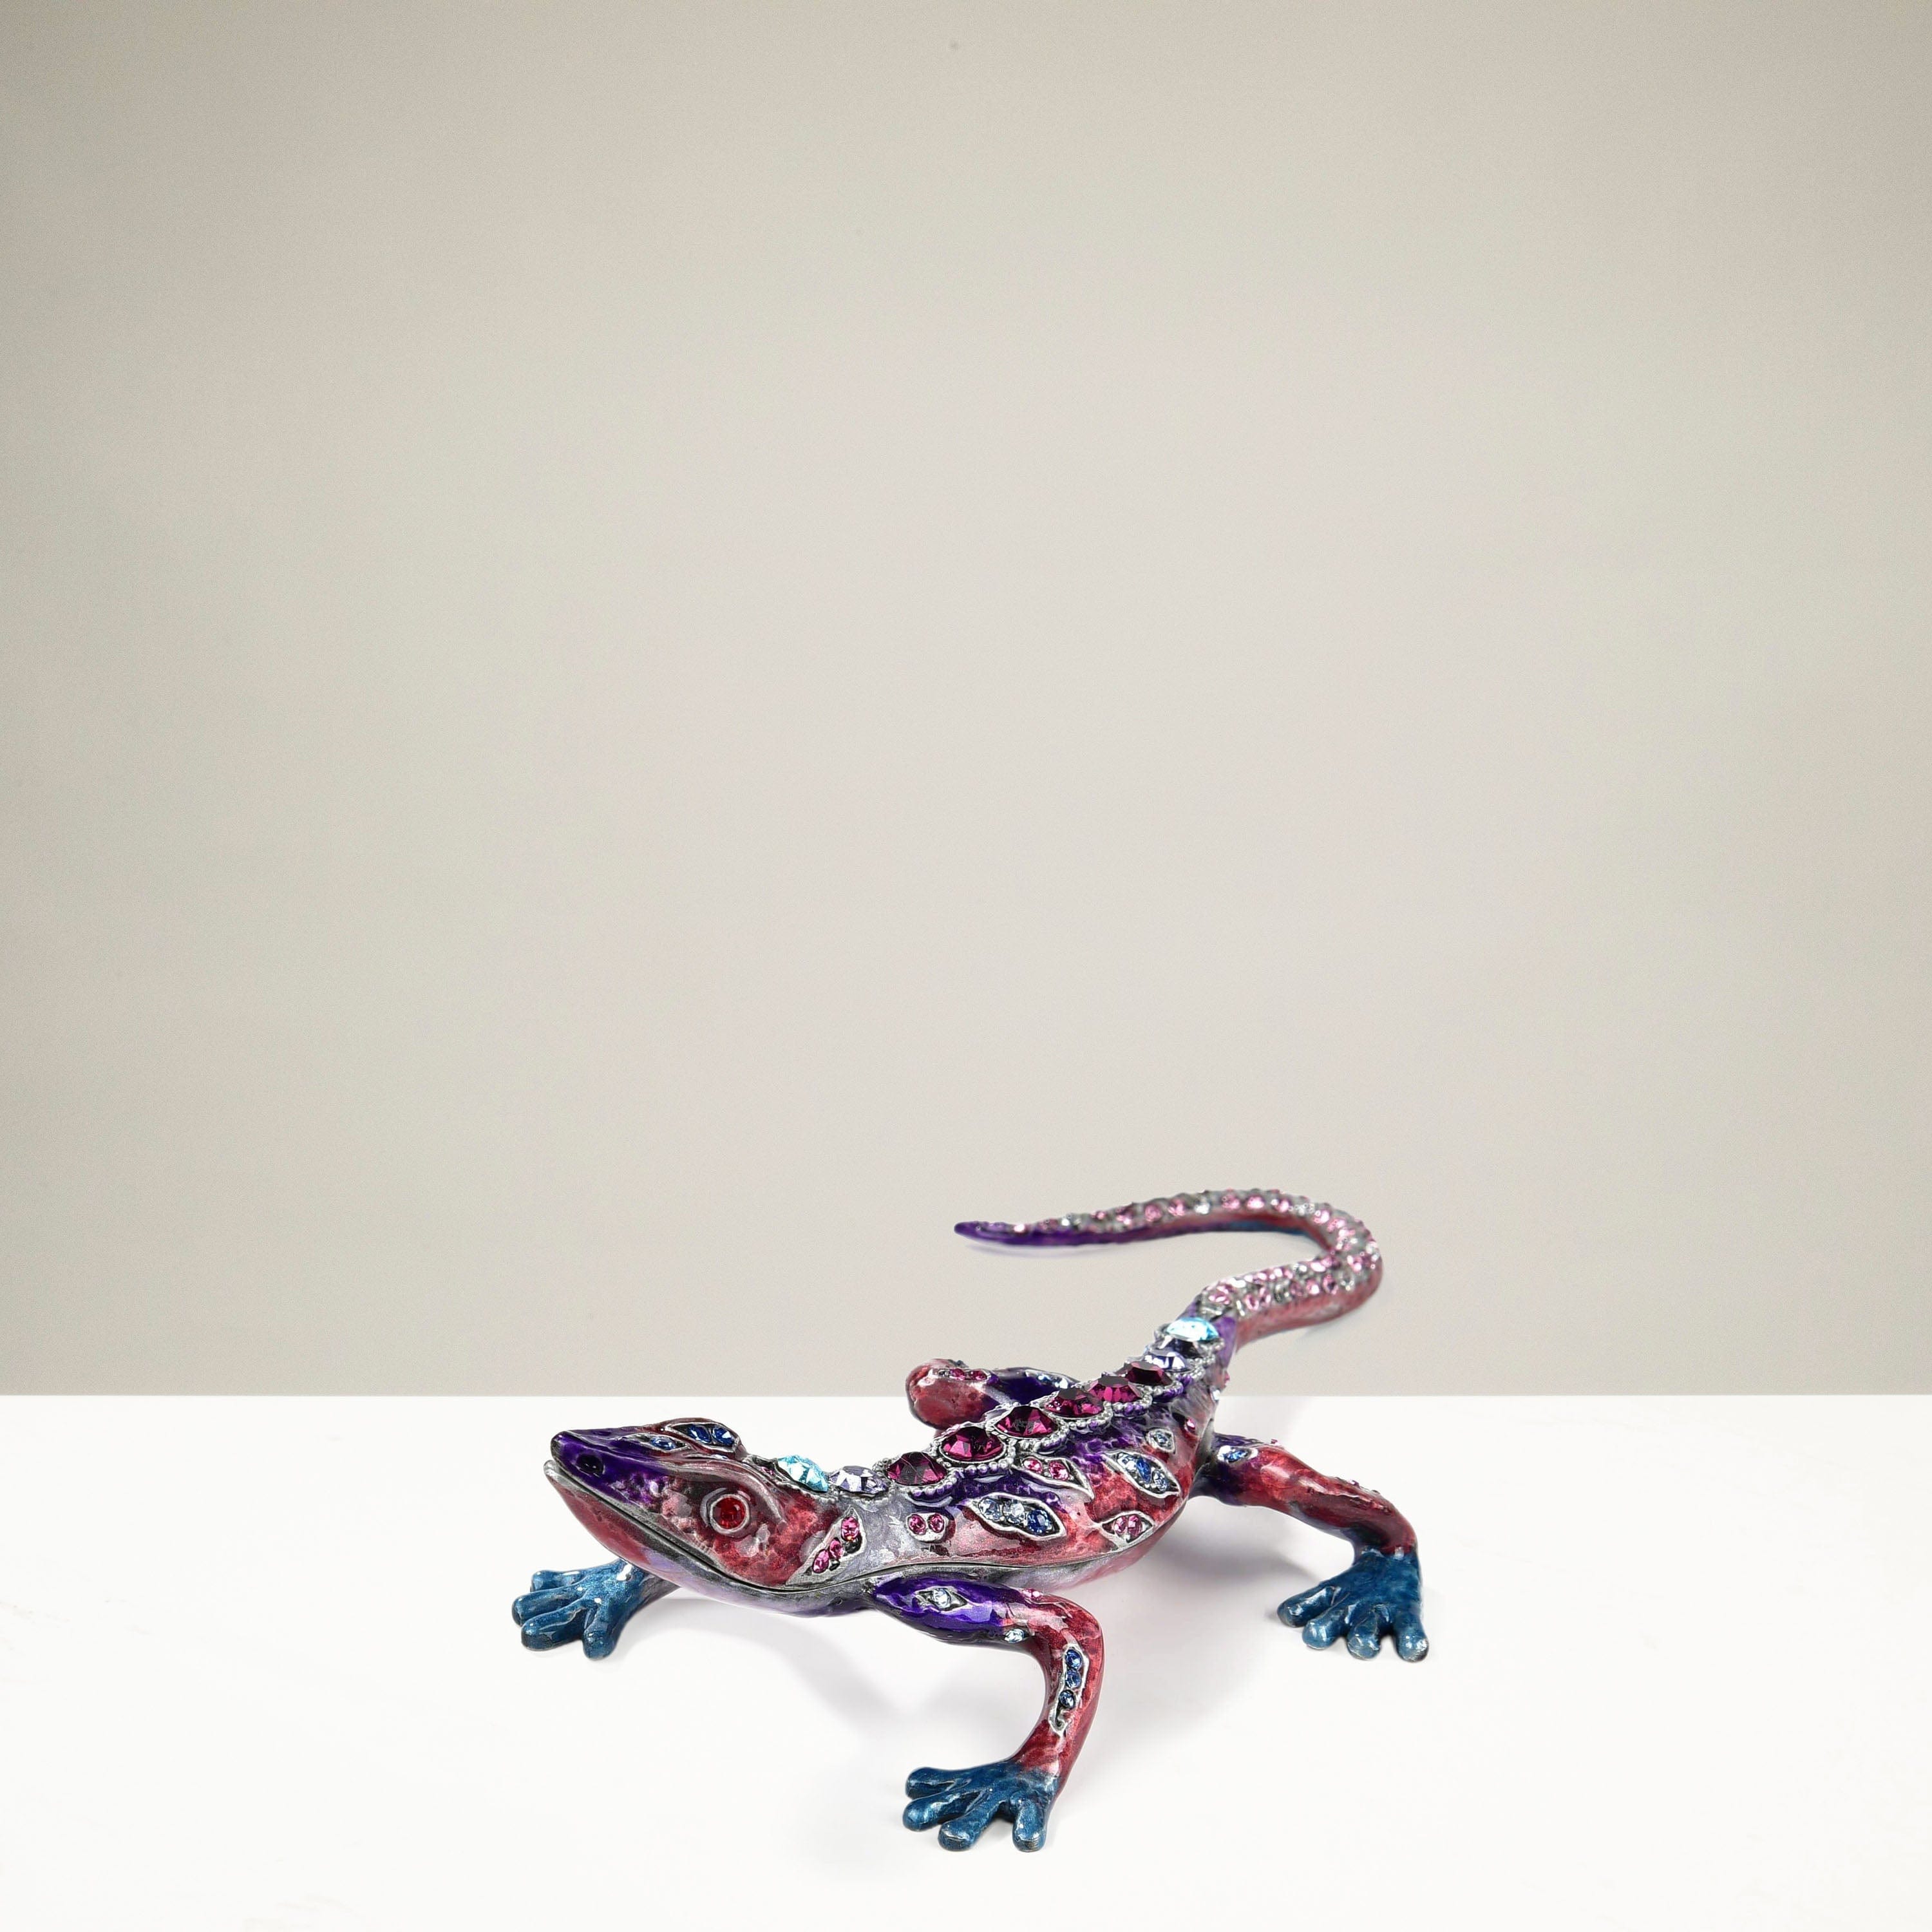 Kalifano Vanity Figurine Amethyst Crystal Lizard Figurine Keepsake Box SVA-028